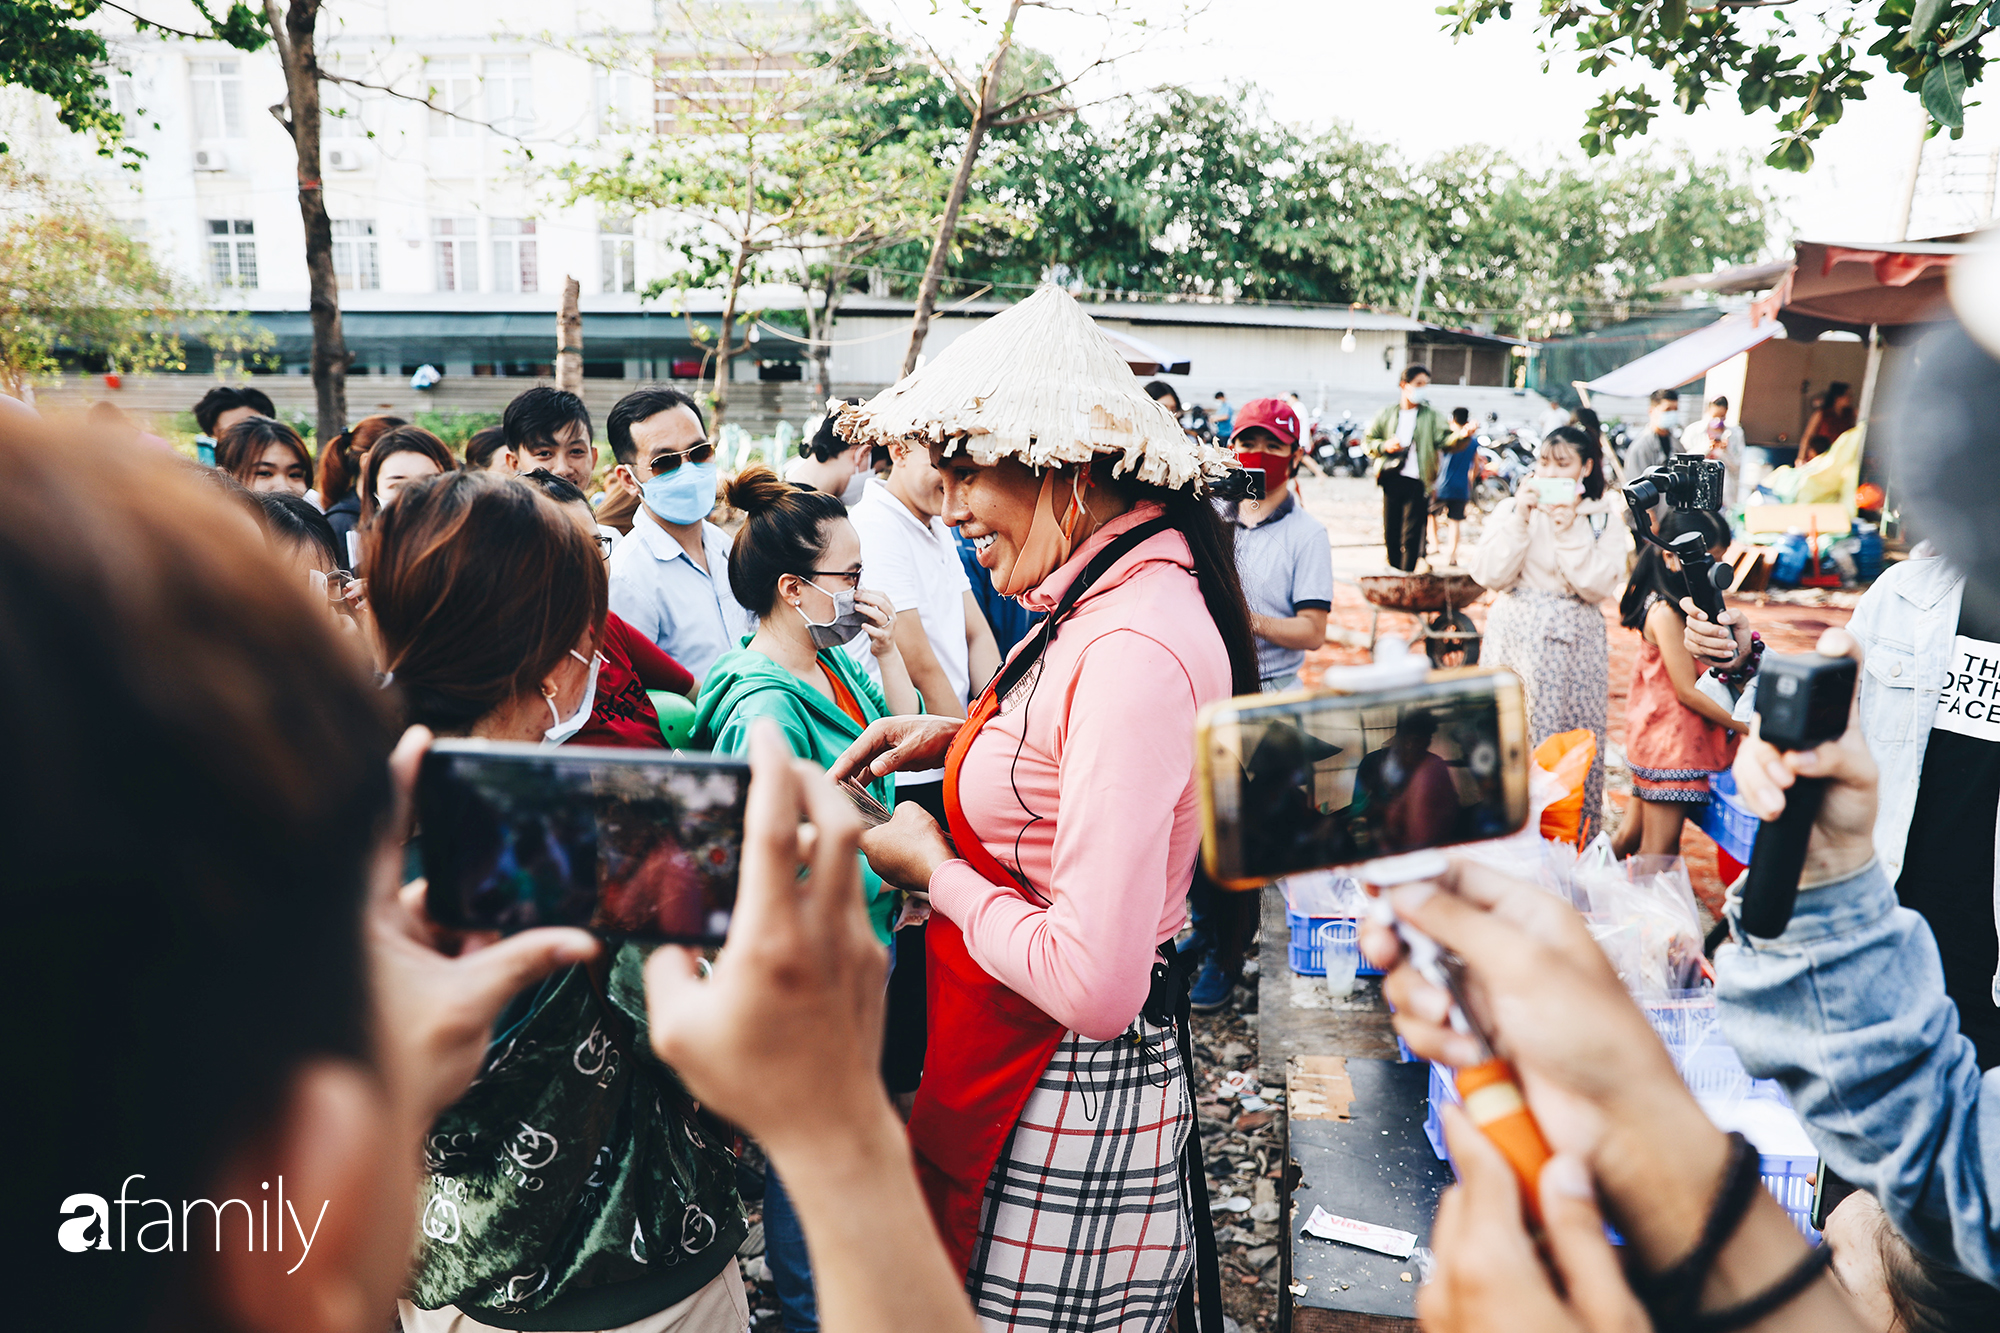 Cát Thy - Nhờ cái miệng quá duyên mà trở thành &quot;Diva&quot; với hàng bánh tráng trộn nổi nhất Sài Gòn, mỗi ngày có hàng trăm người đến tìm để quay hình, chụp ảnh - Ảnh 8.